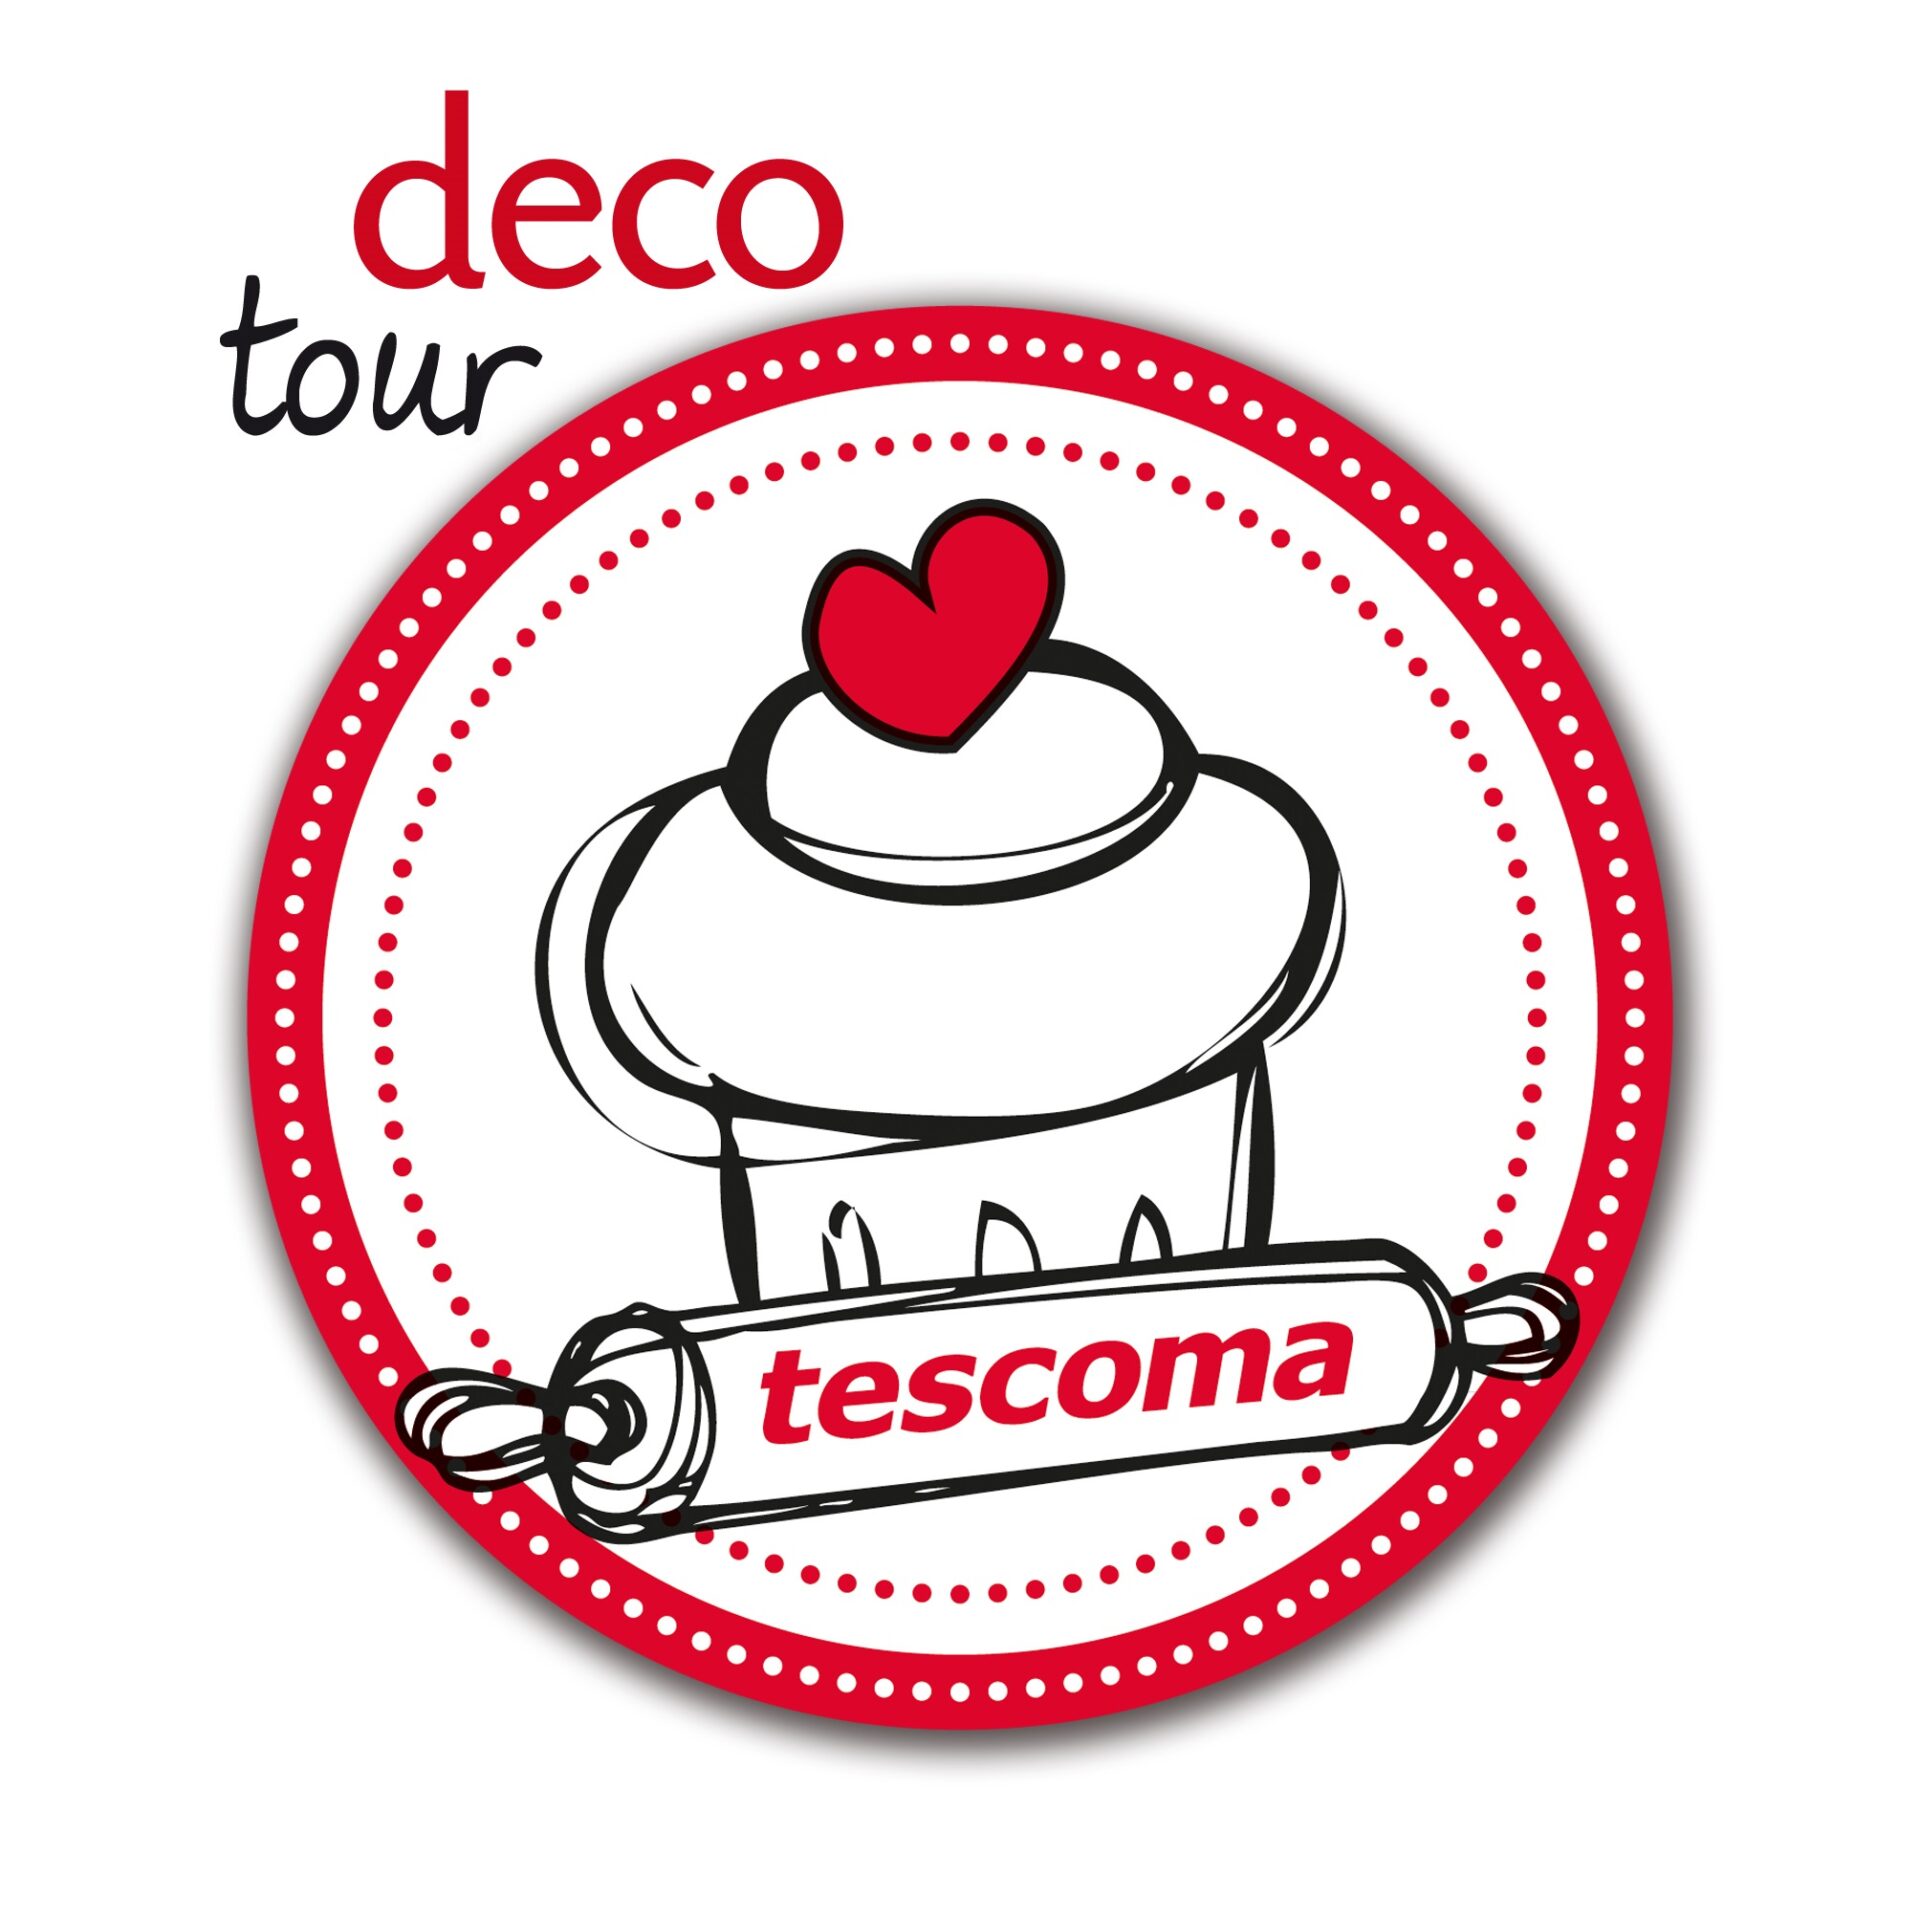 TESCOMA DECO TOUR: per apprendere tutti i trucchi del cake design